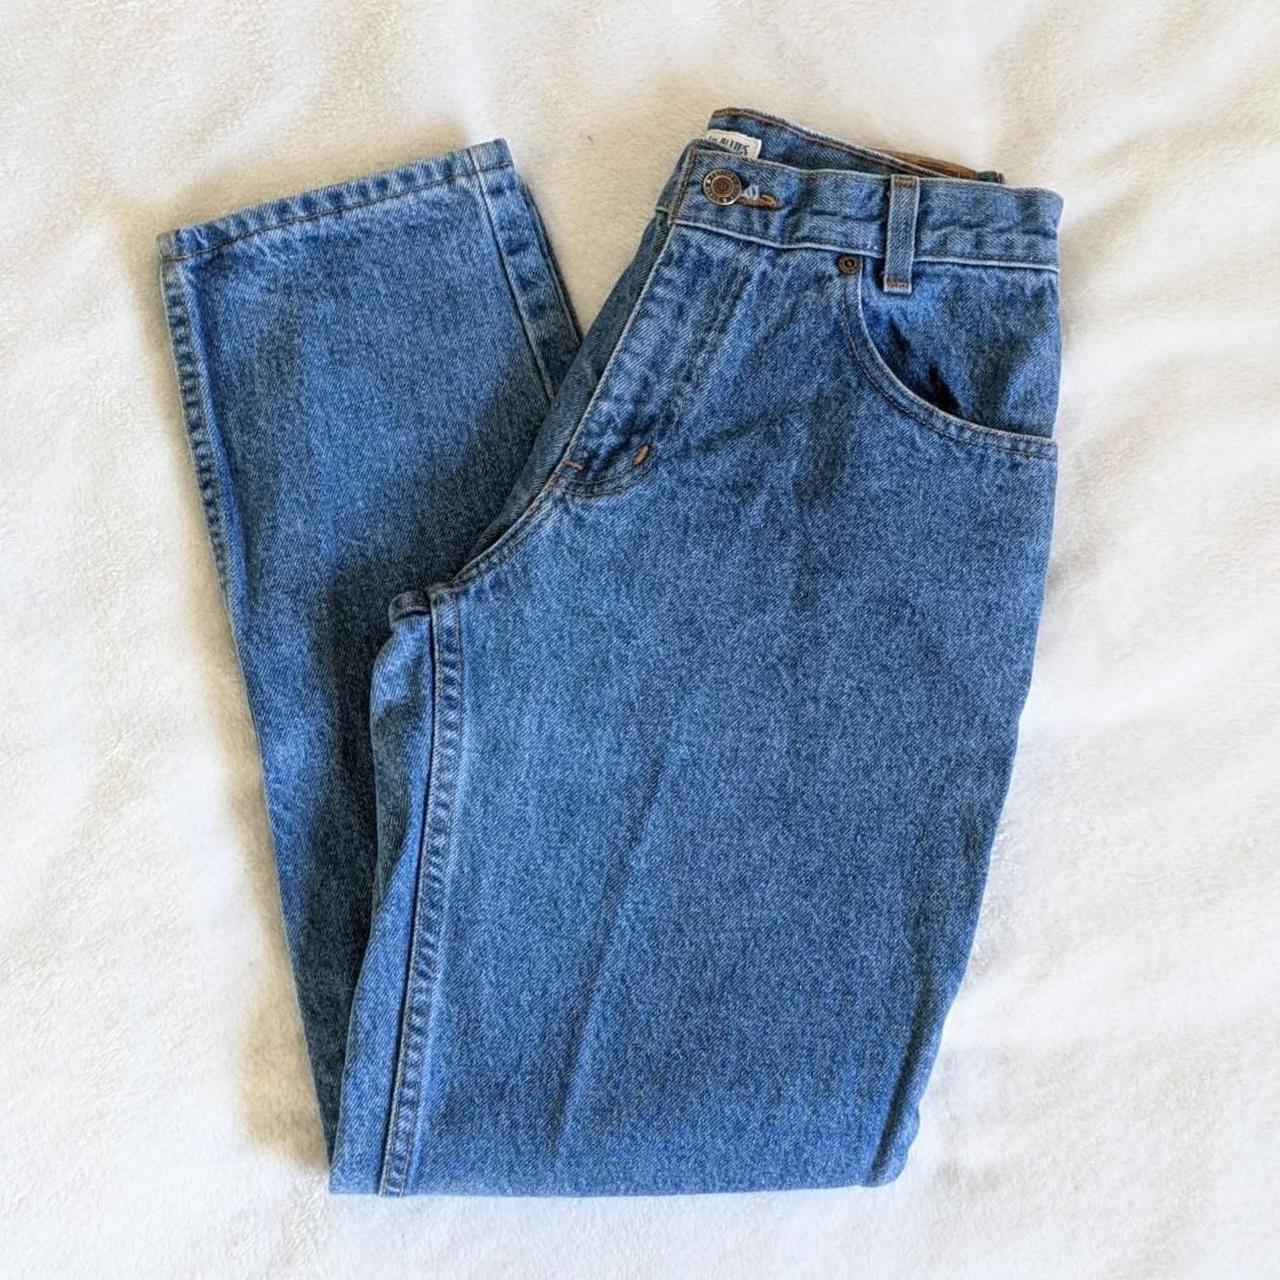 Canyon River Blues denim jeans Teen size 27